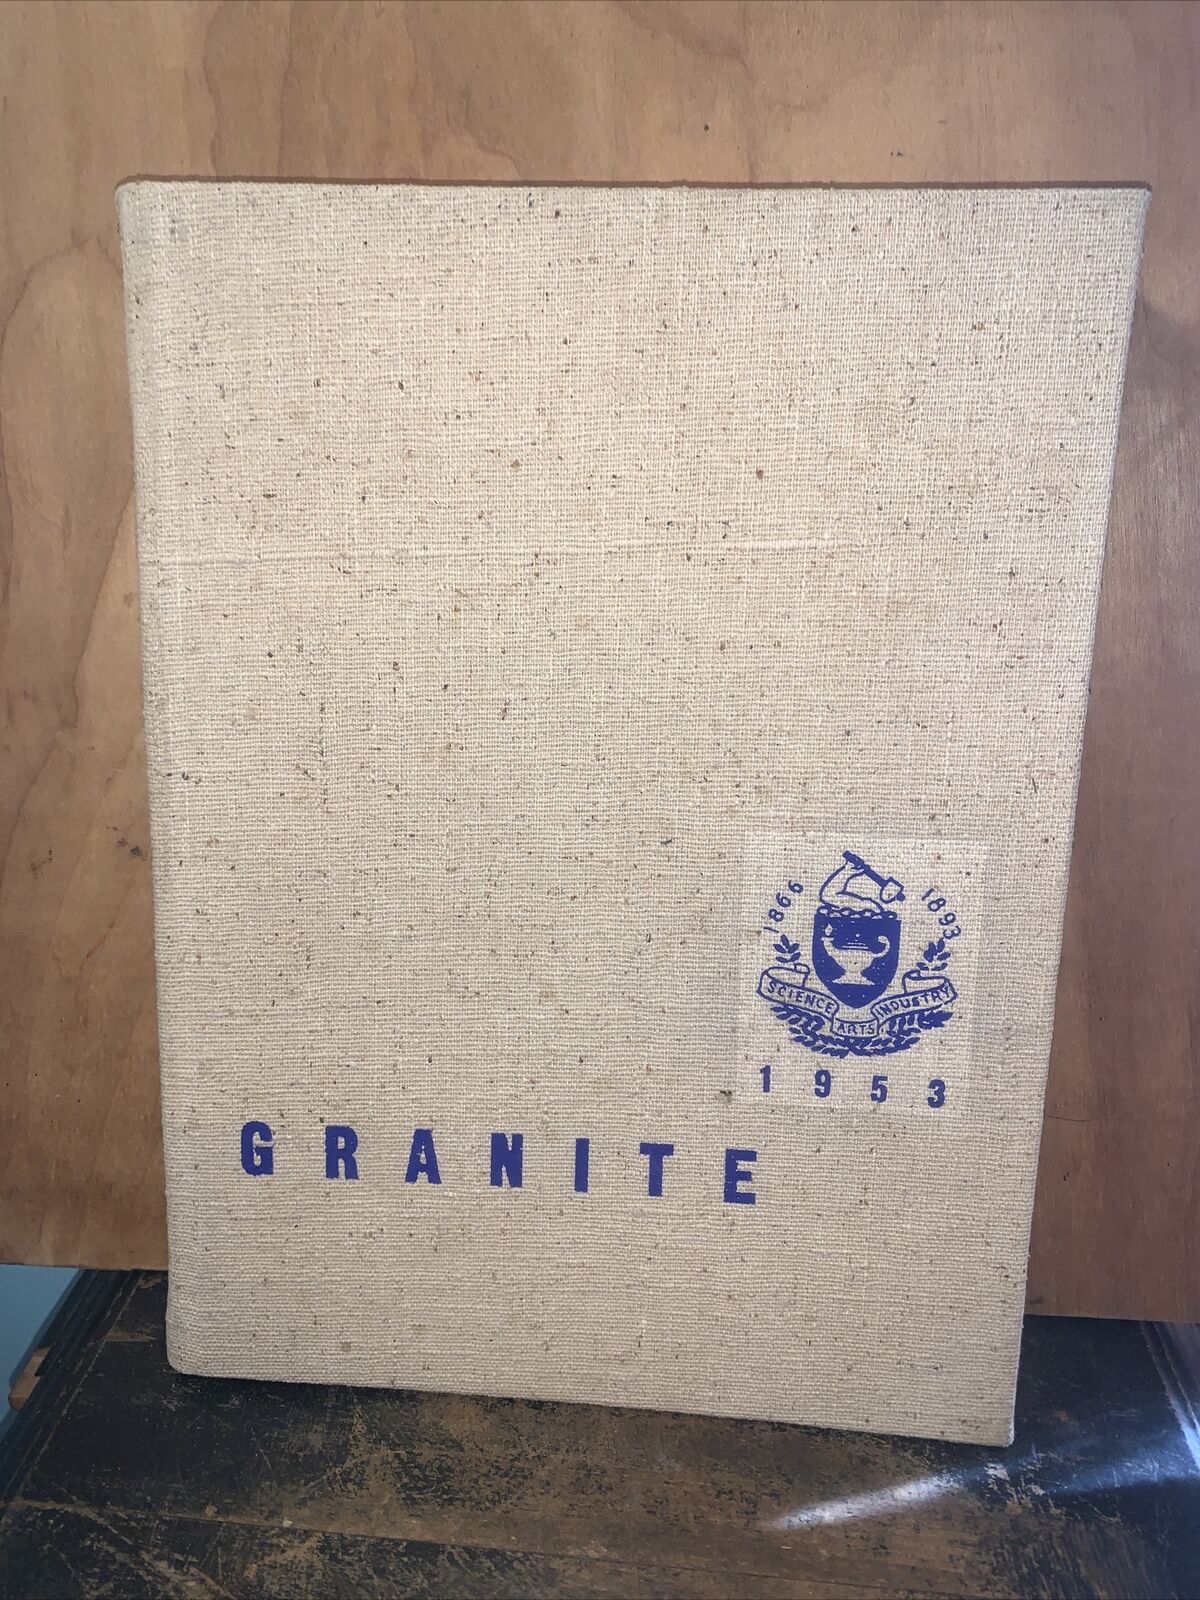 1953 University of New Hampshire -Yearbook- Granite UNH Durham.